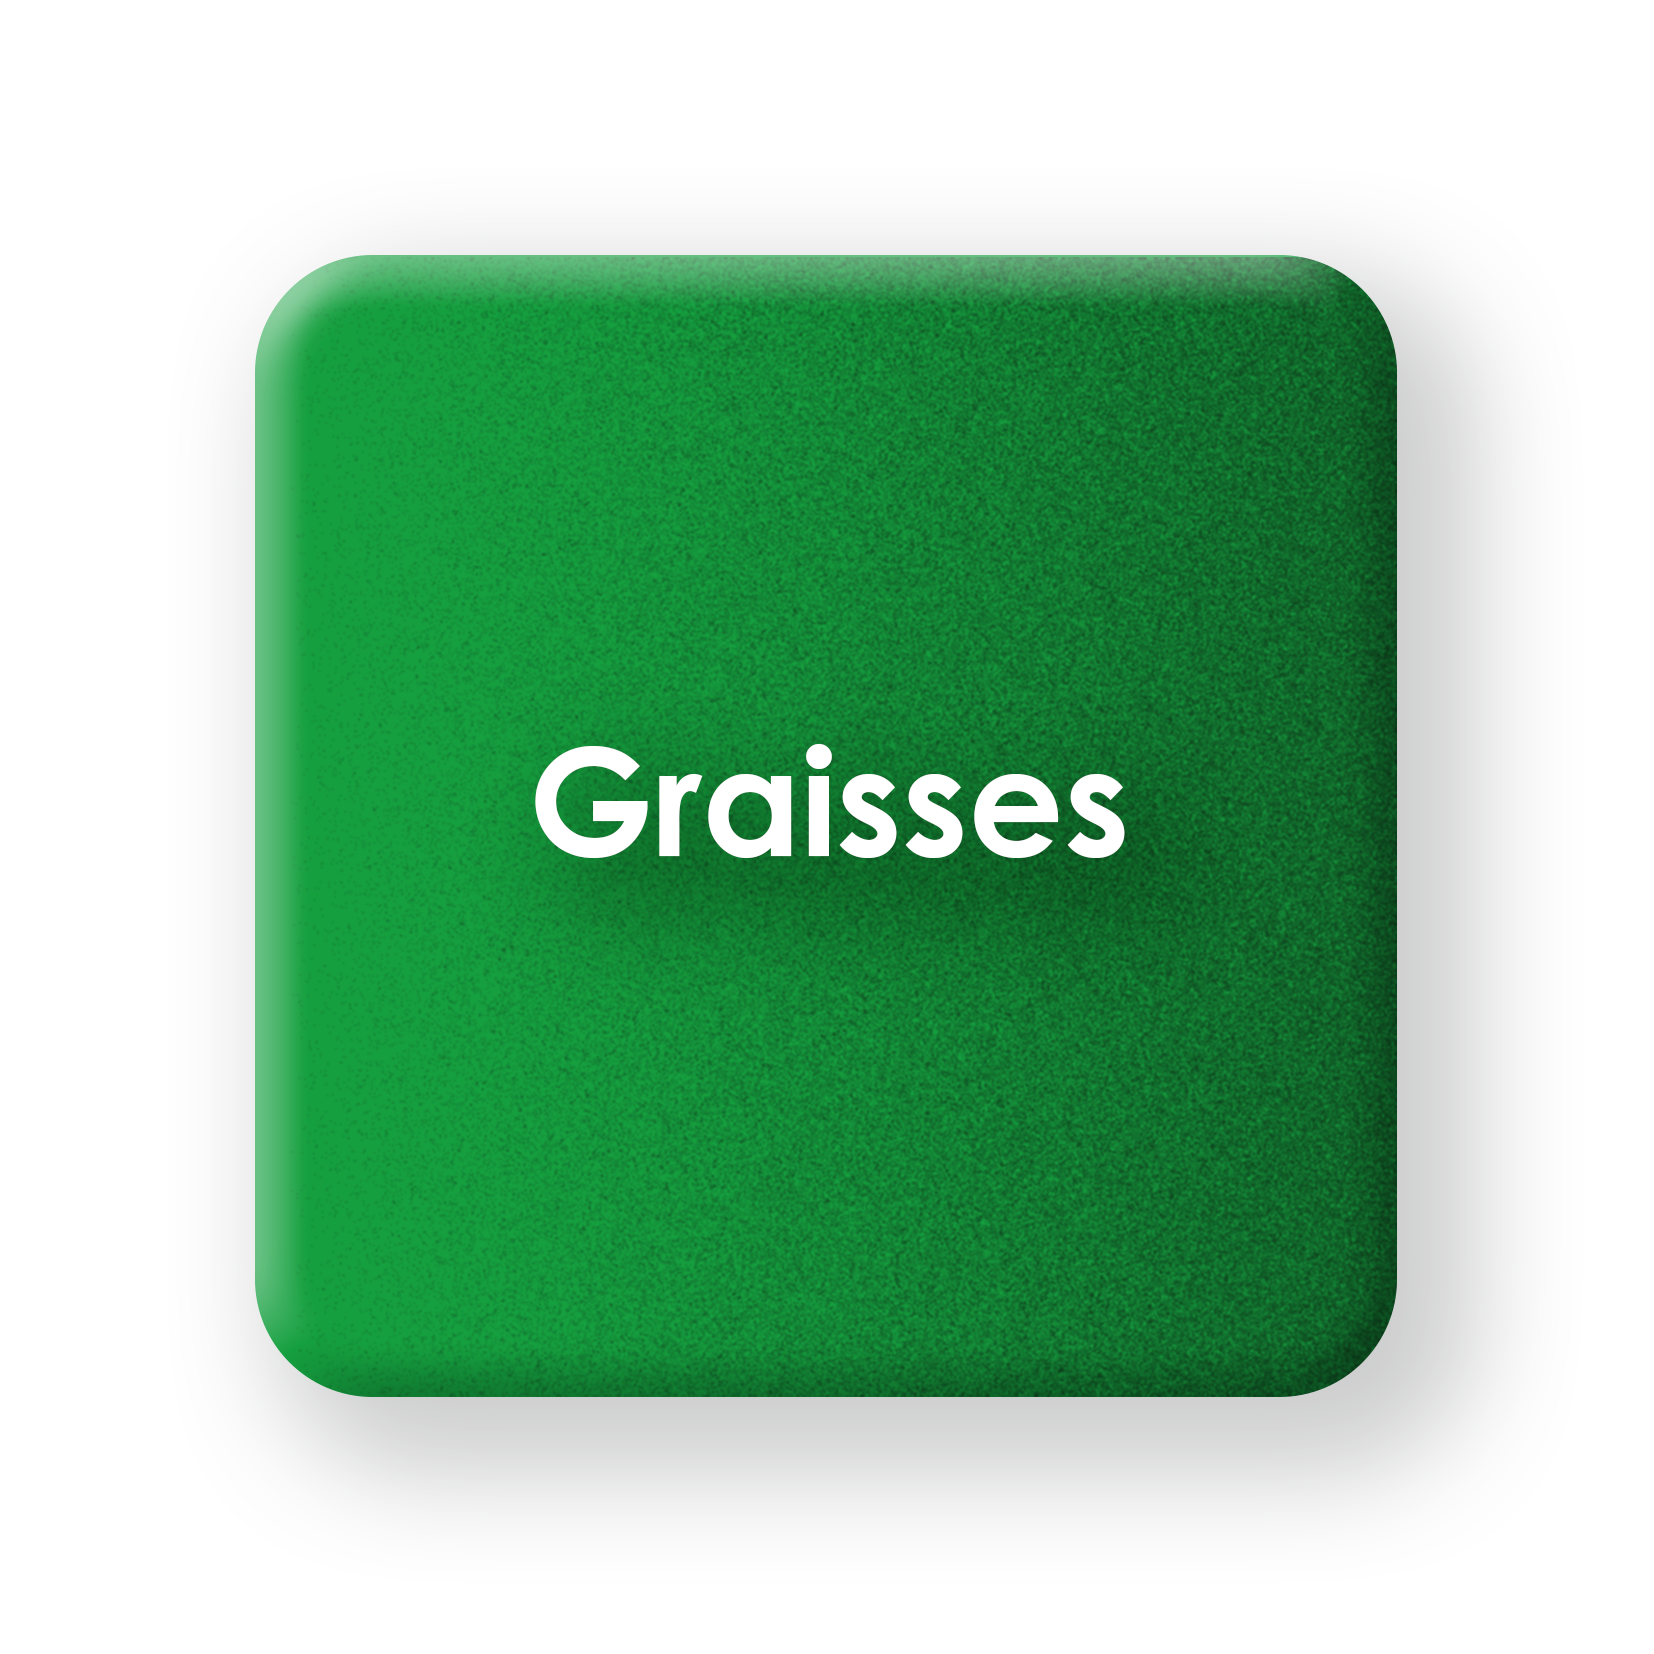 Graisses